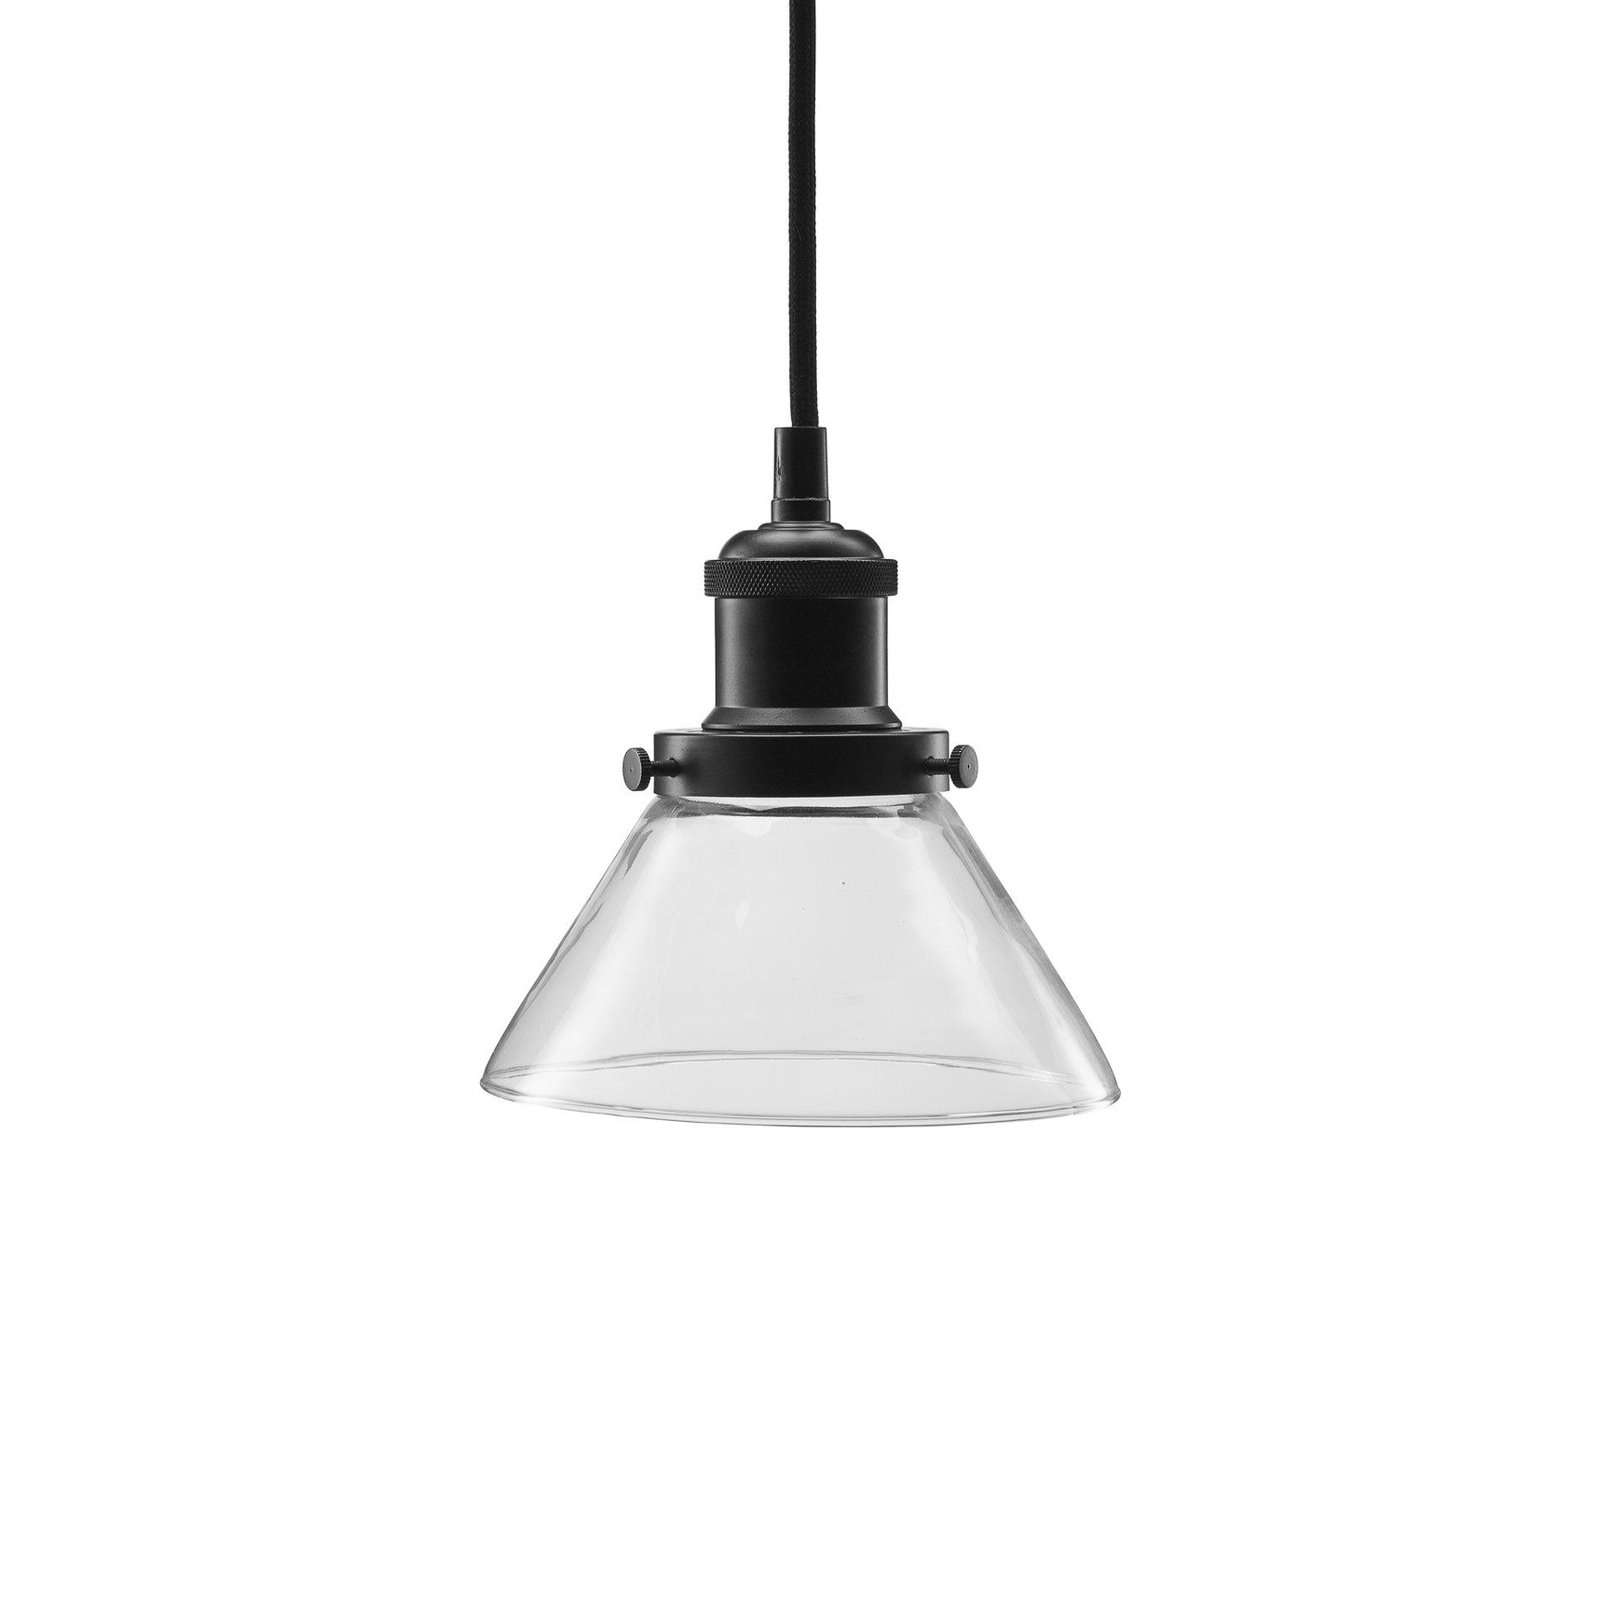 Lampa wisząca PR Home August, przezroczysta, Ø 15 cm